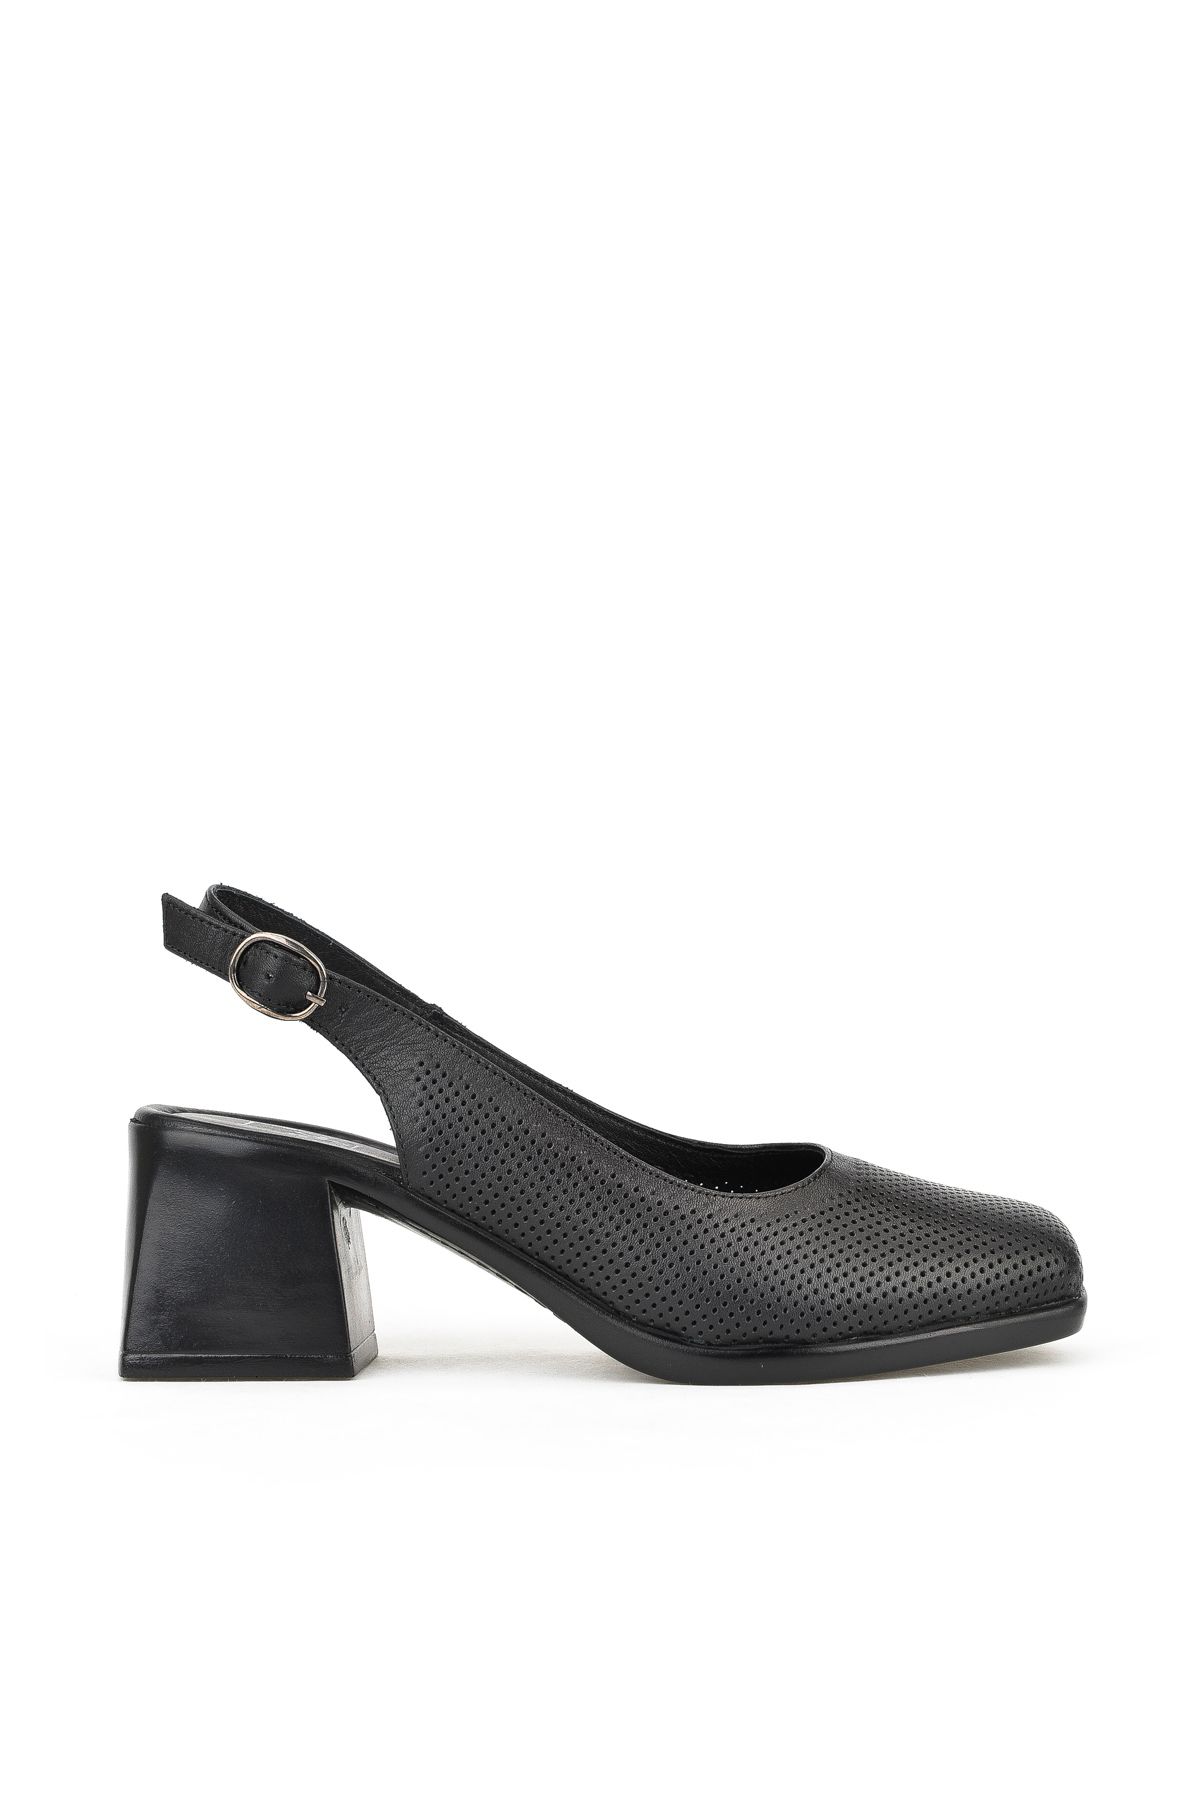 Ziya , Kadın Hakiki Deri Topuklu Sandalet 141992Z19002 Siyah